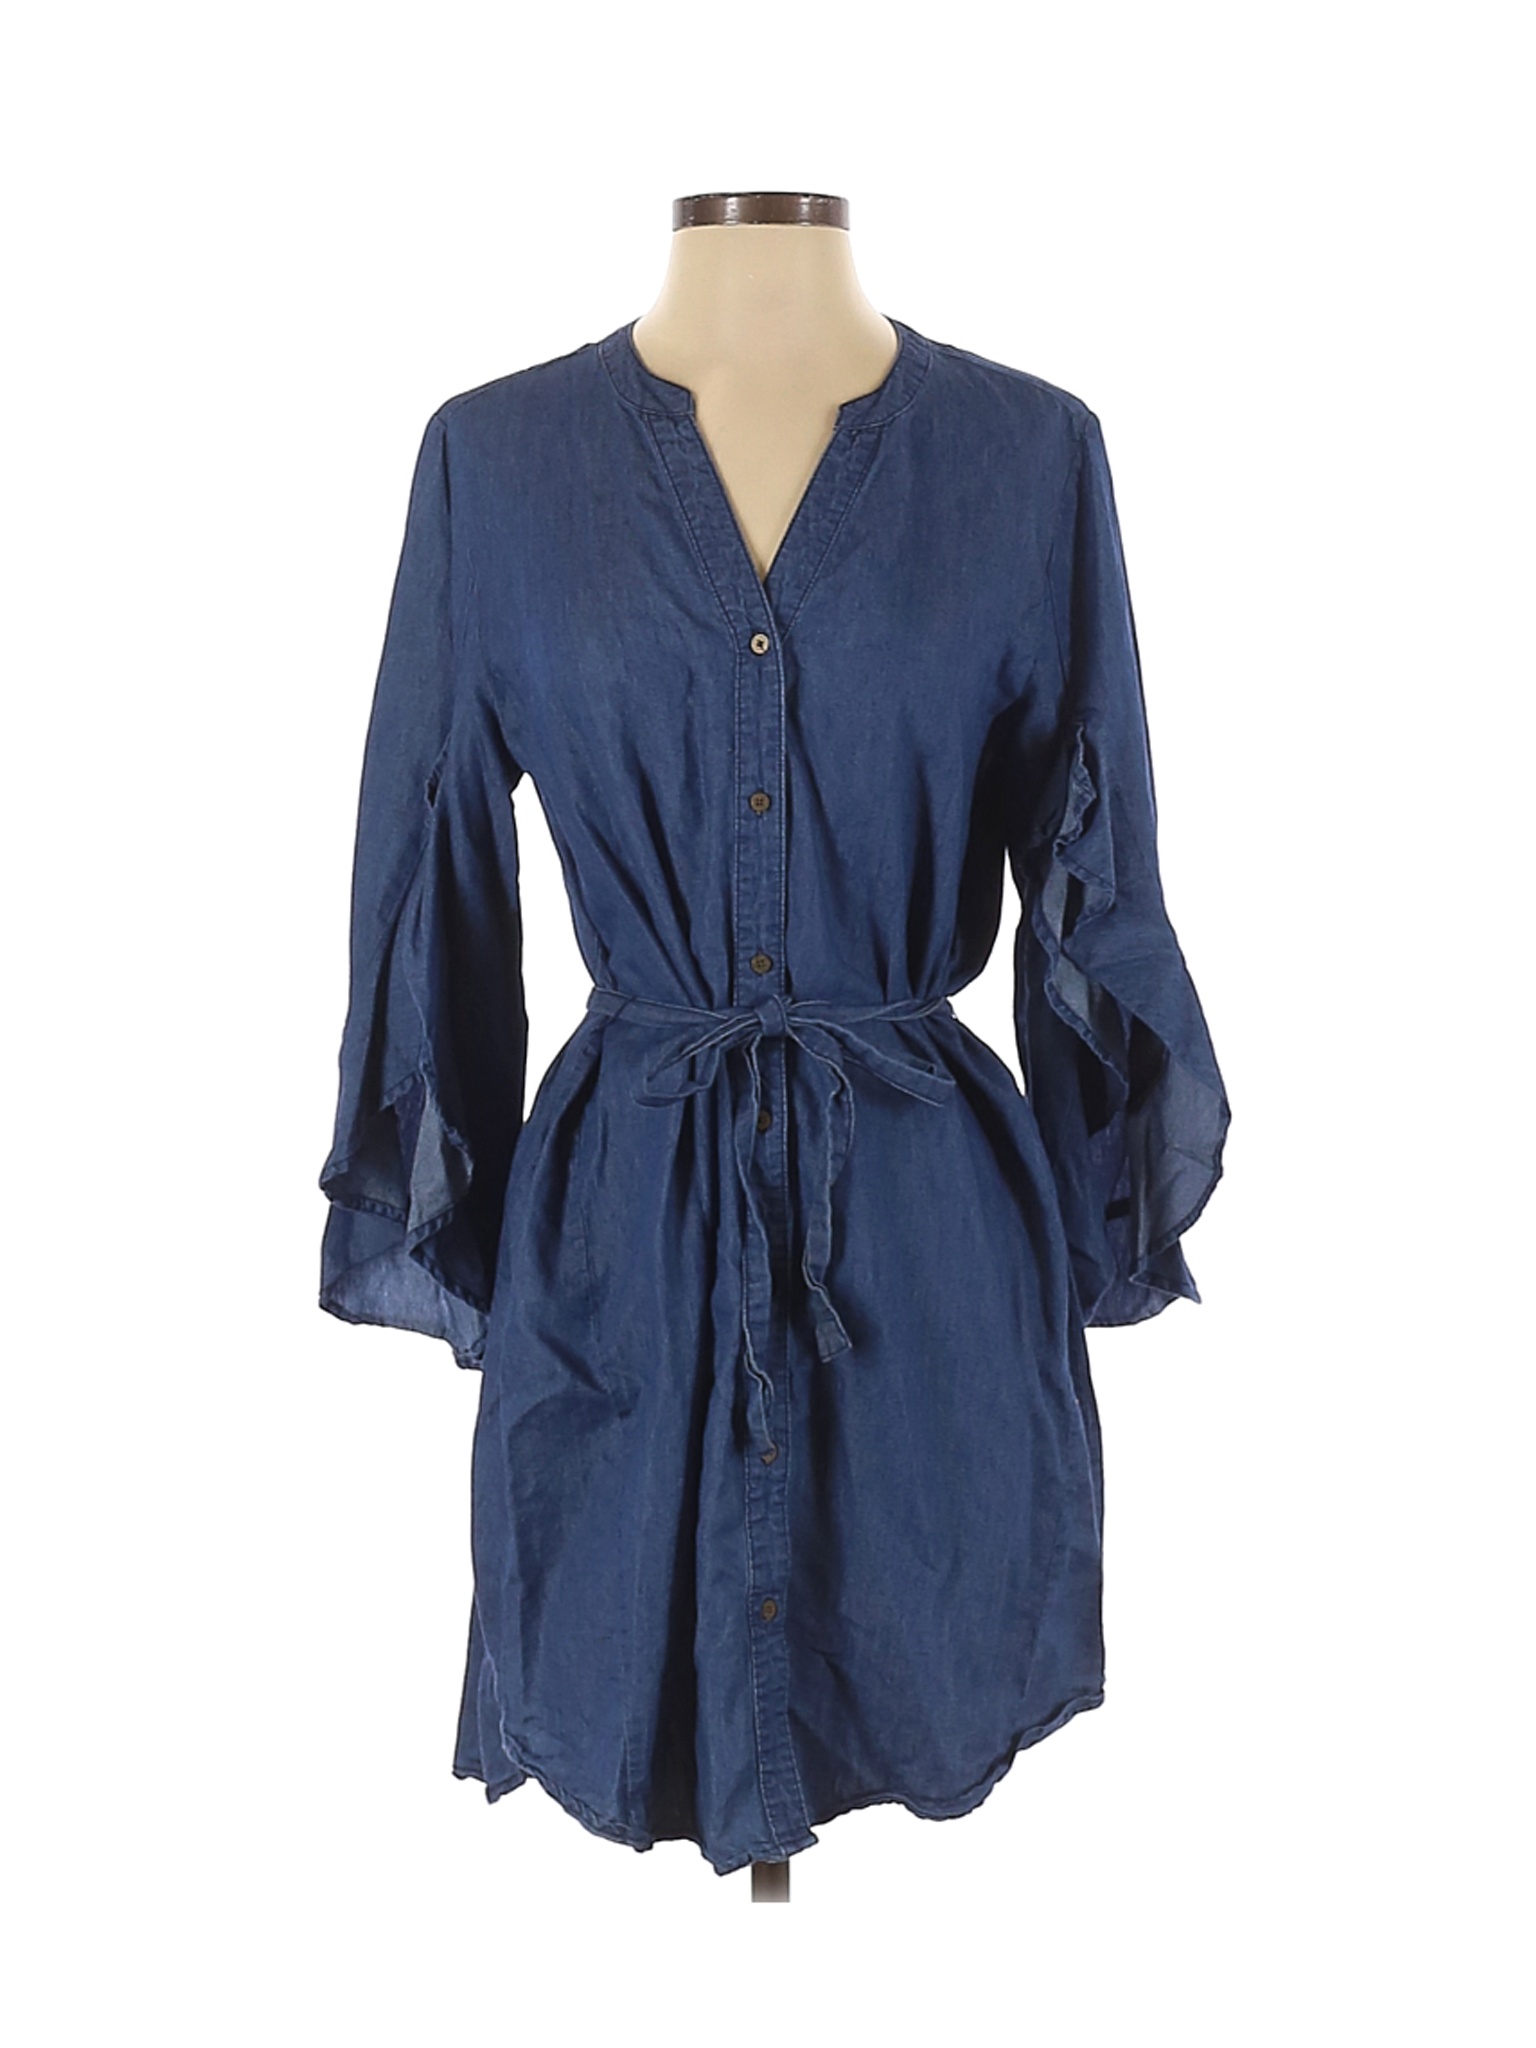 Given Kale Women Blue Casual Dress S | eBay